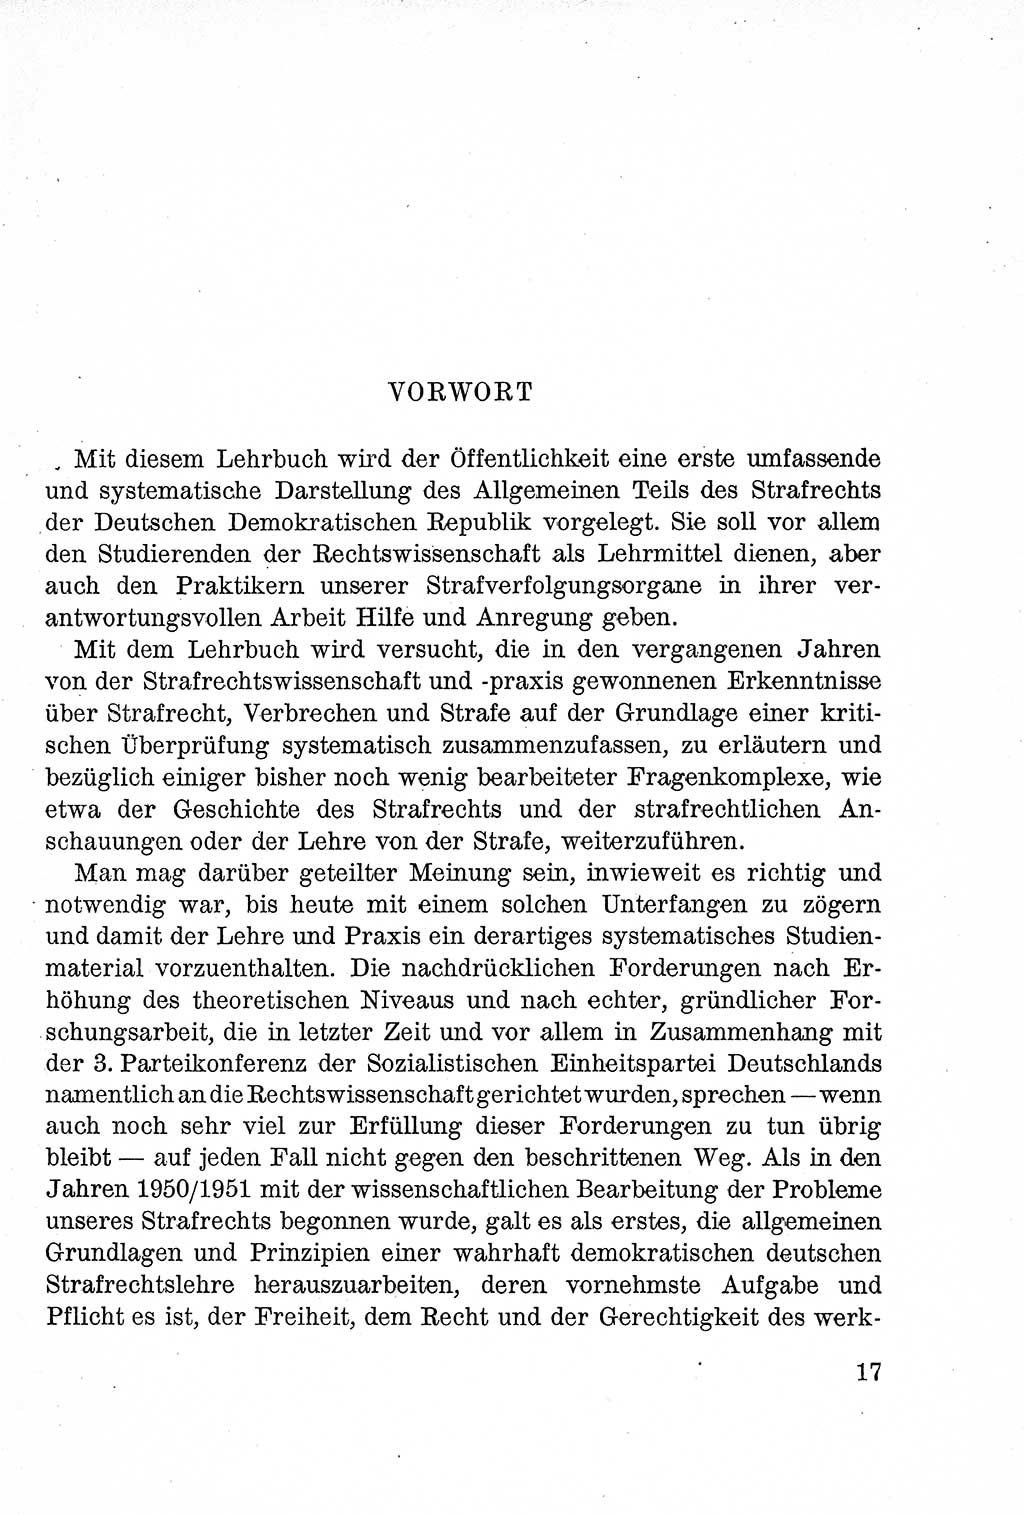 Lehrbuch des Strafrechts der Deutschen Demokratischen Republik (DDR), Allgemeiner Teil 1957, Seite 17 (Lb. Strafr. DDR AT 1957, S. 17)